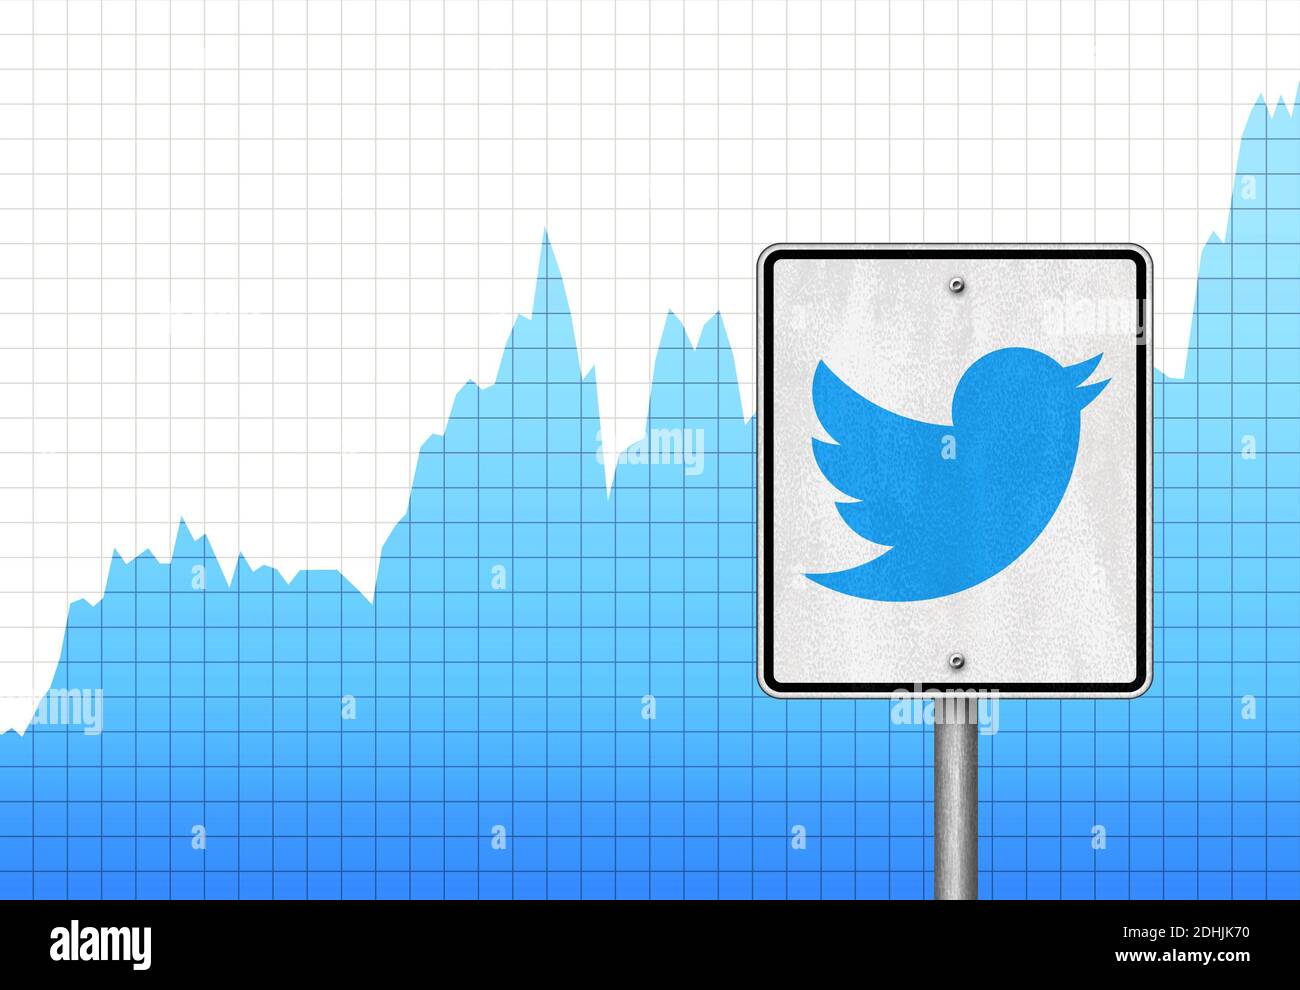 Twitter stock chart Stock Photo